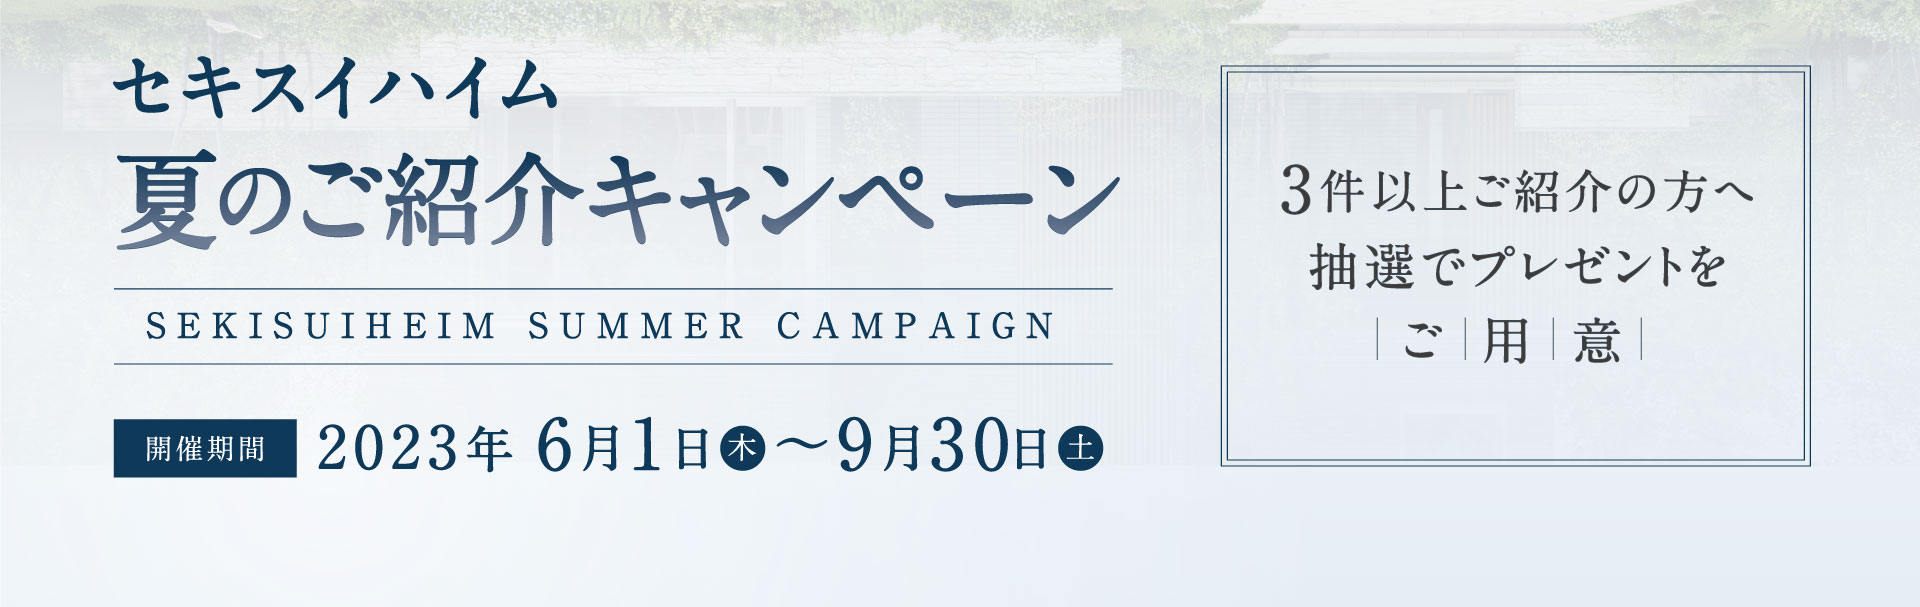 セキスイハイム 夏のご紹介キャンペーン 2023年6月1日〜9月30日